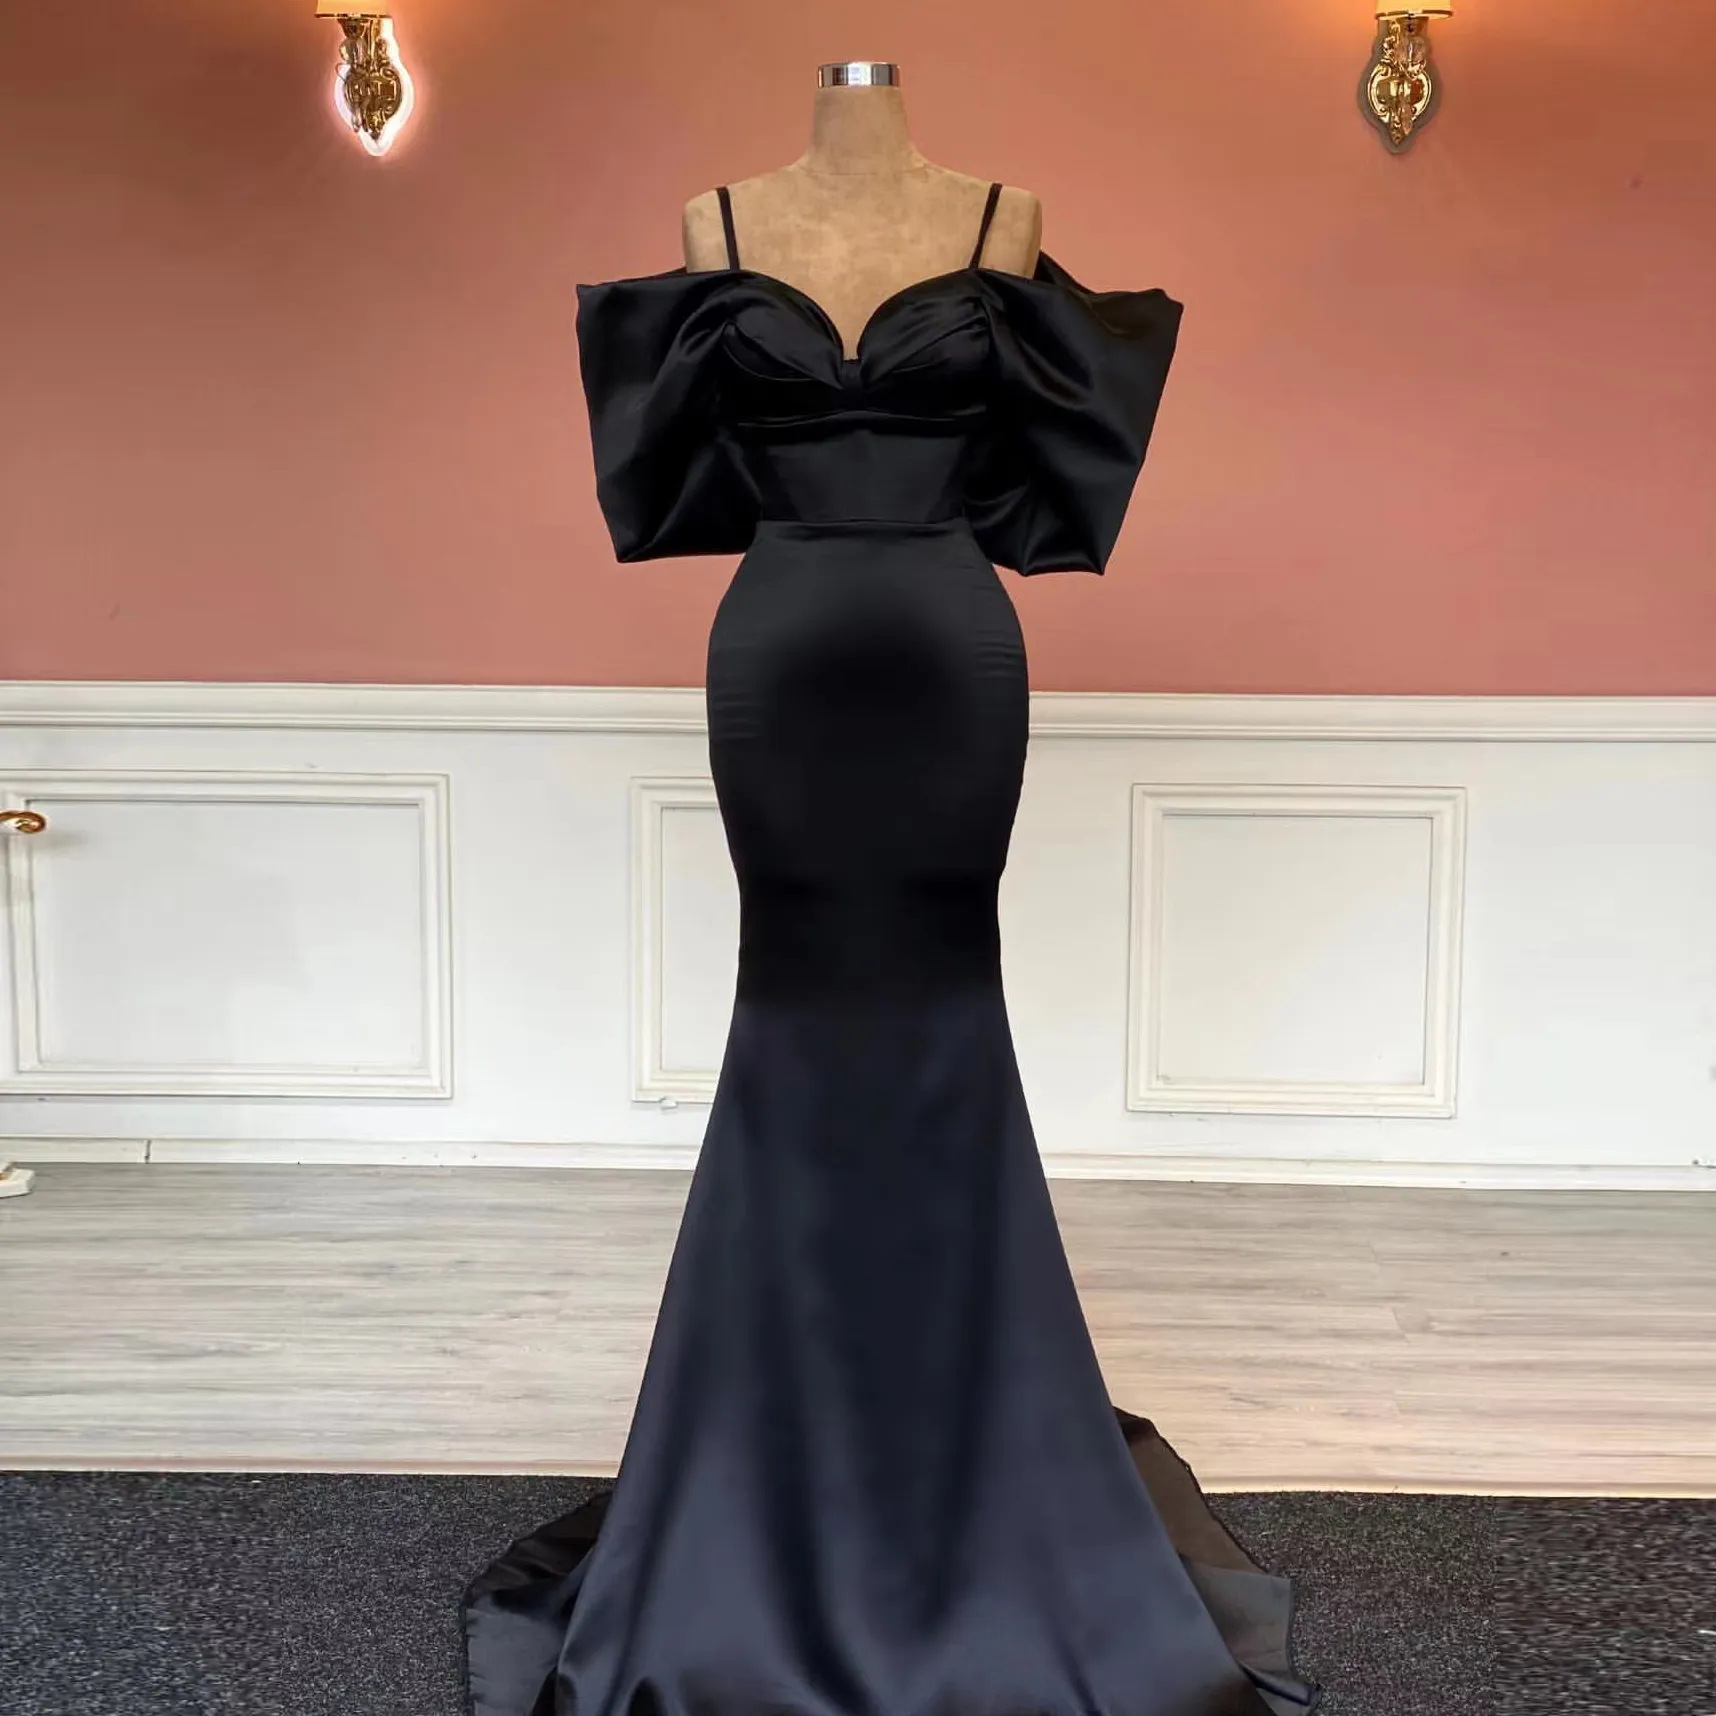 Élégant noir sirène robes De bal Satin sans bretelles pli étage longueur formelle fête robe De soirée Vestido De Fiesta pour les femmes